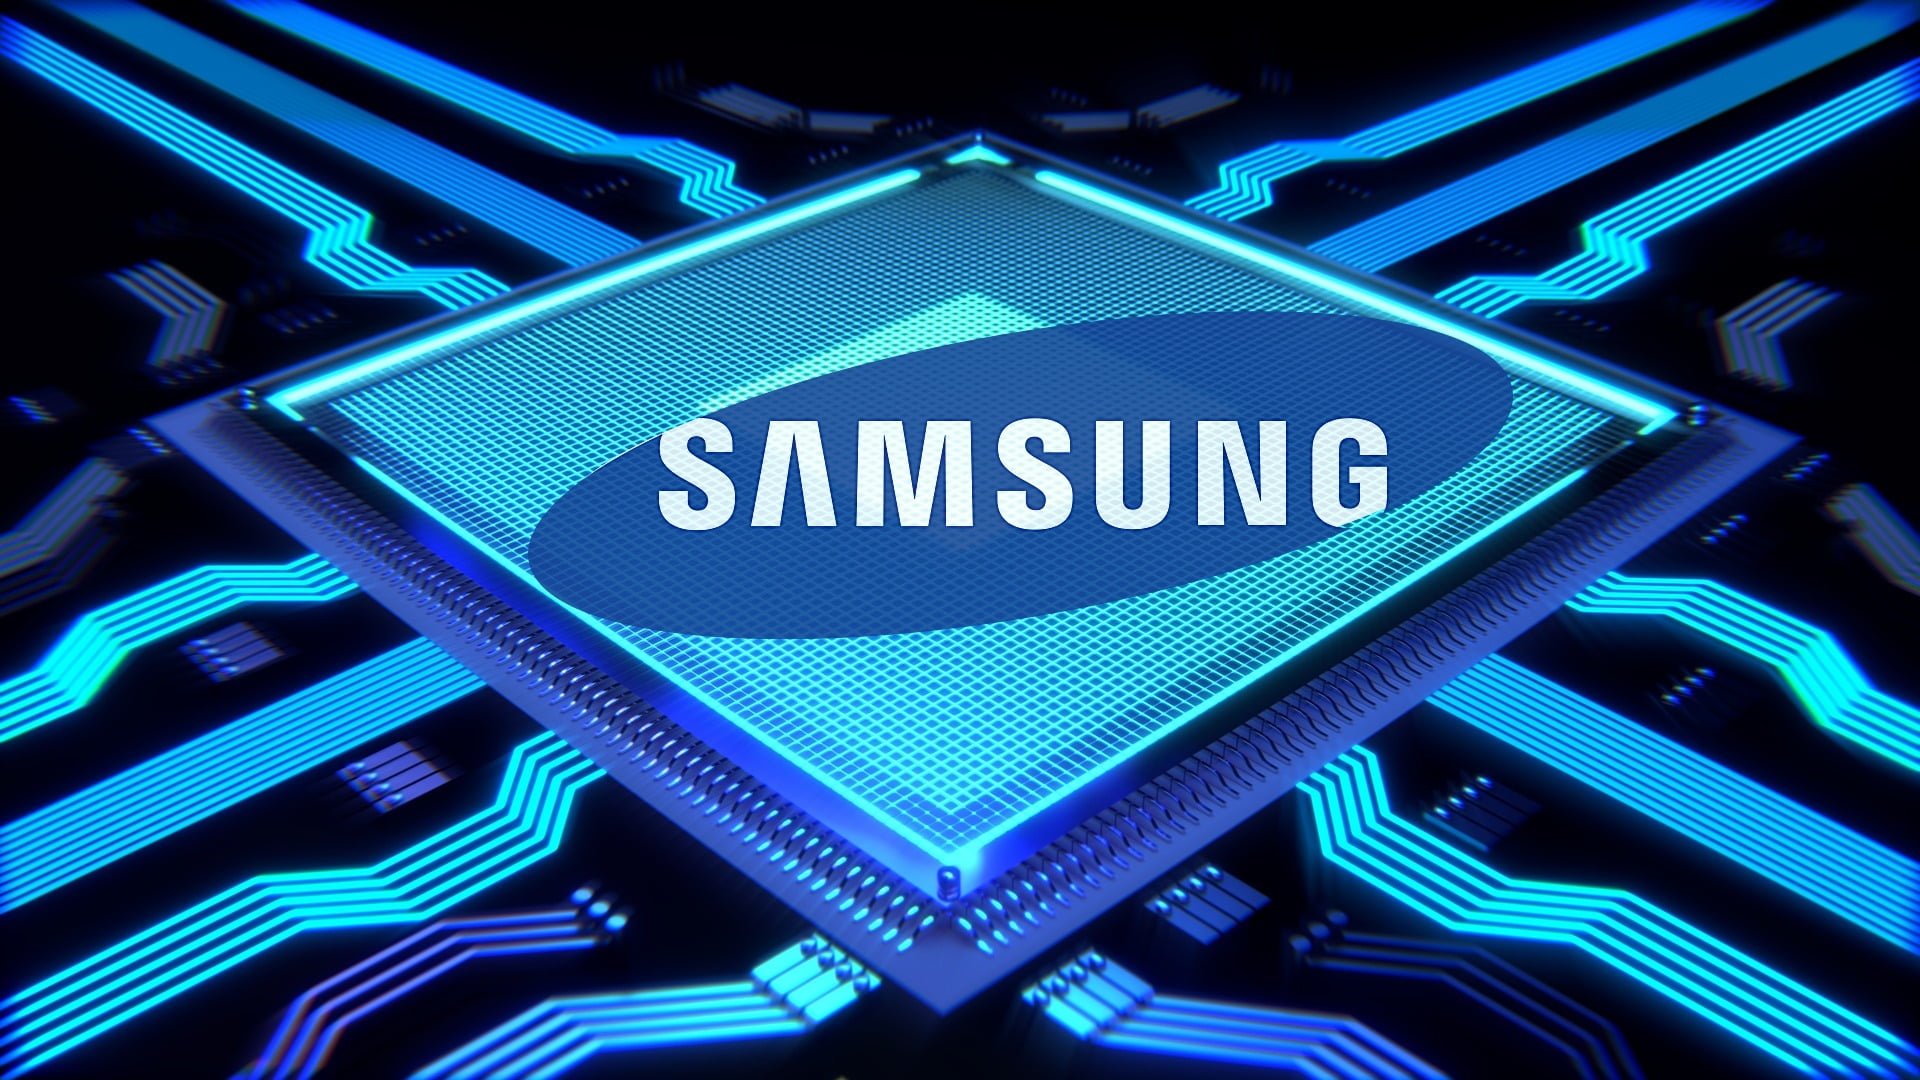 procesor Samsung logo